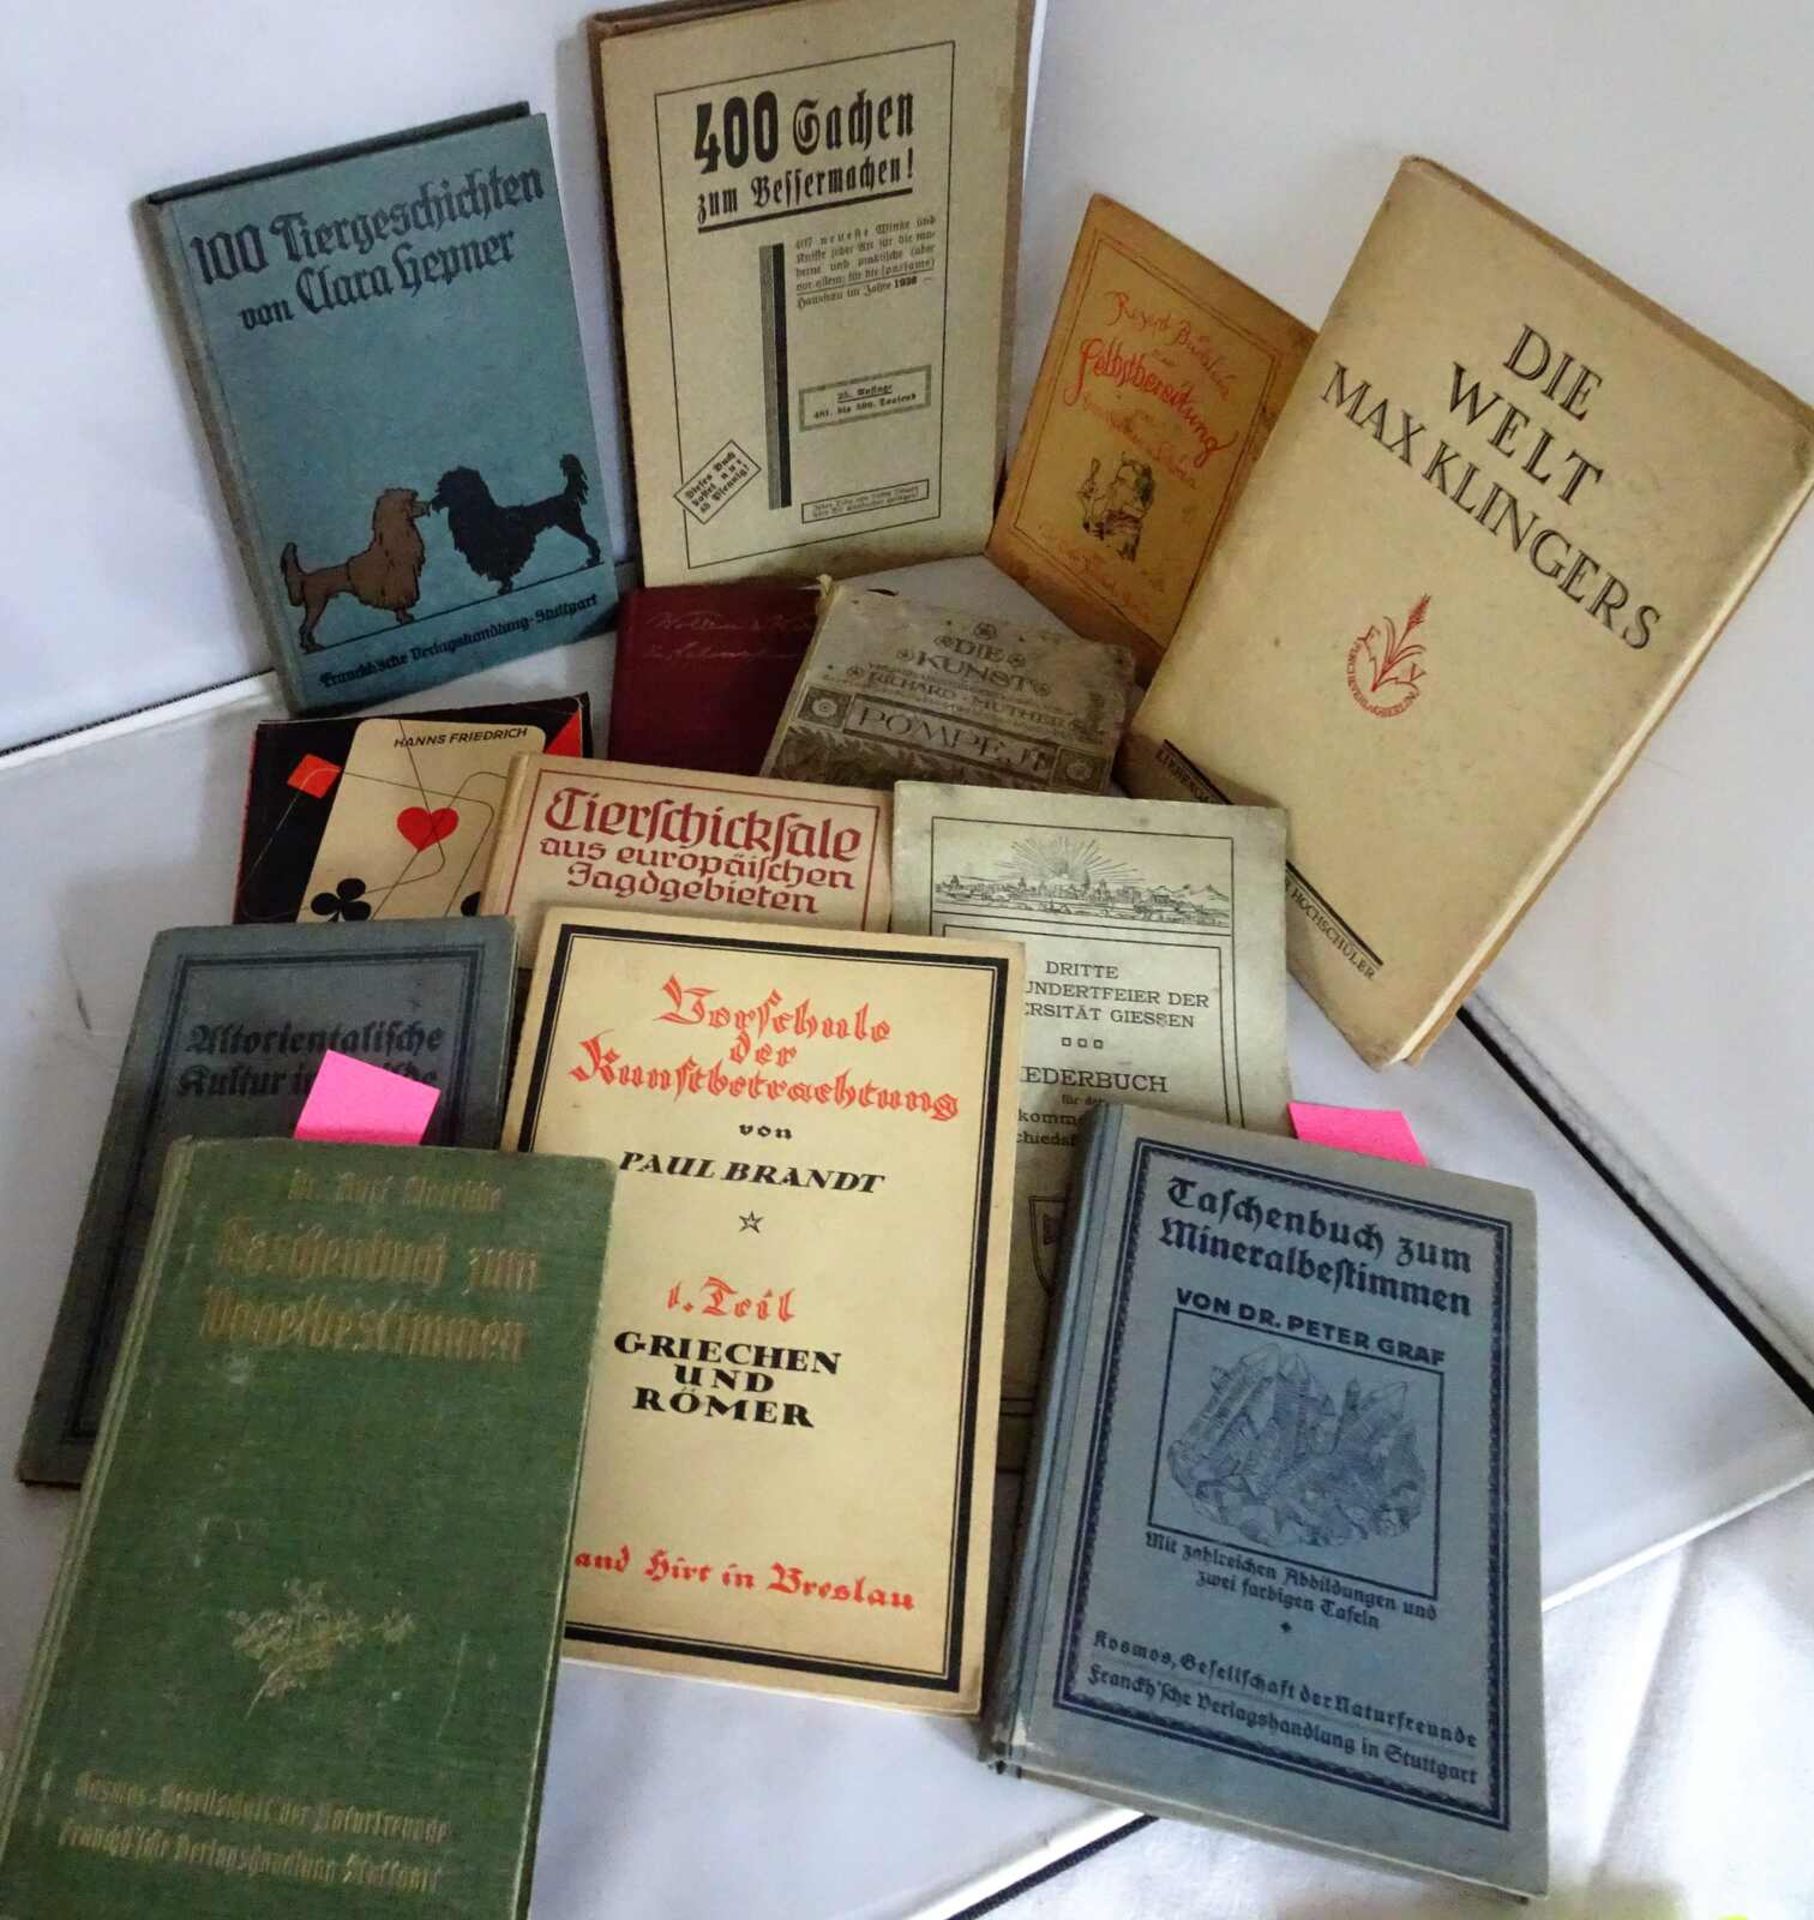 1 Lot alte Bücher aus Auflösung, dabei z.B.: Büchlein für Branntwein und Likörherstellung, Min